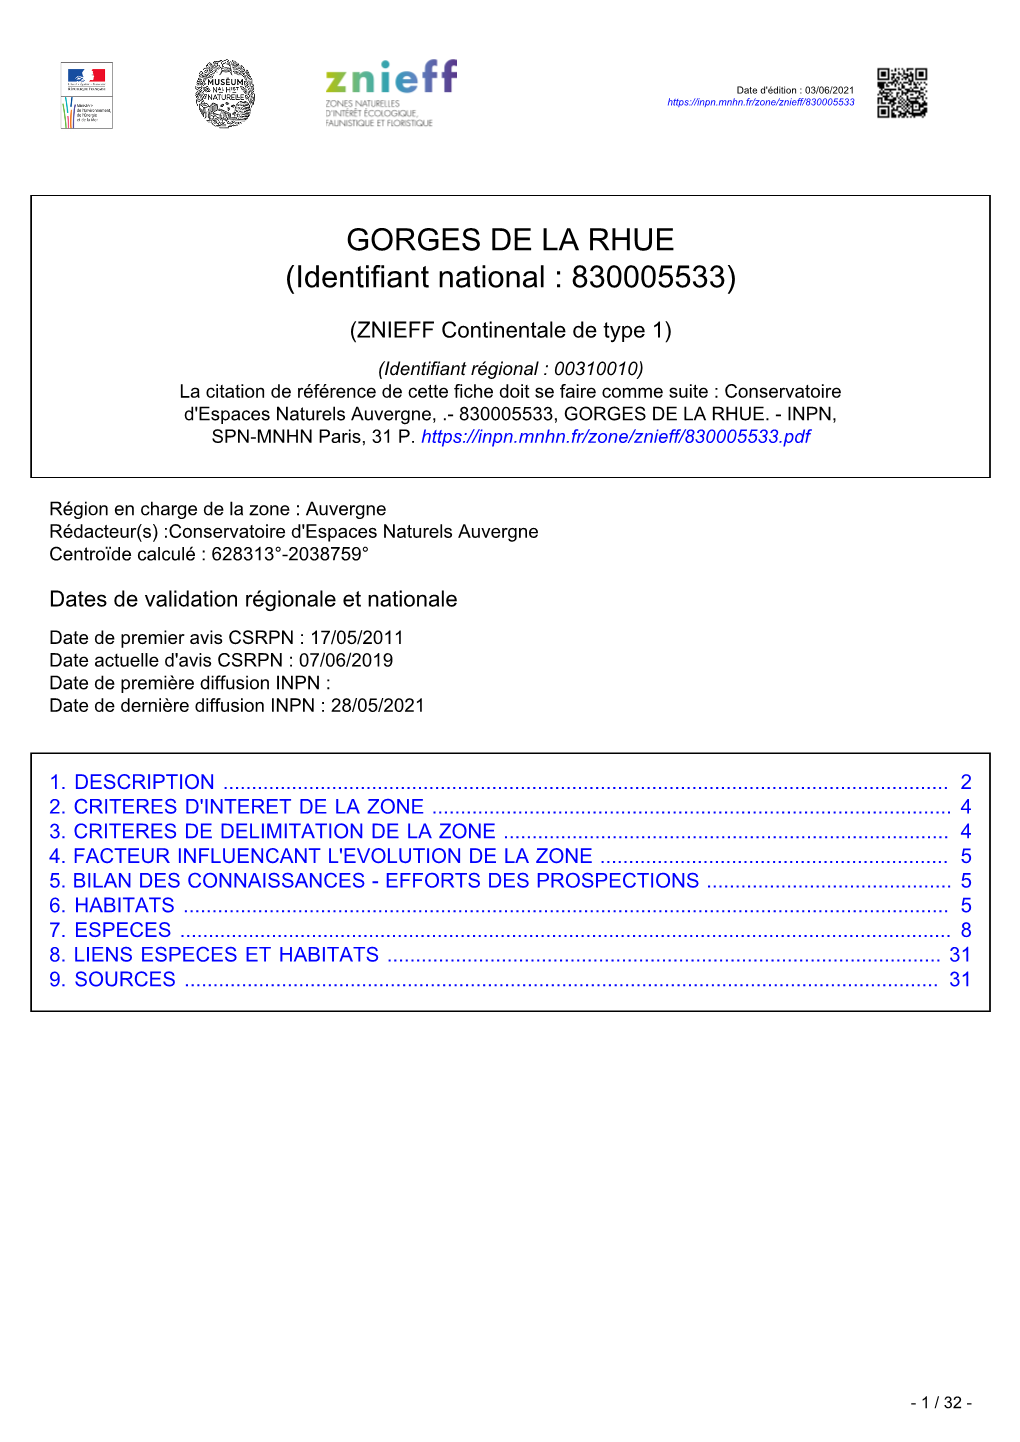 GORGES DE LA RHUE (Identifiant National : 830005533)